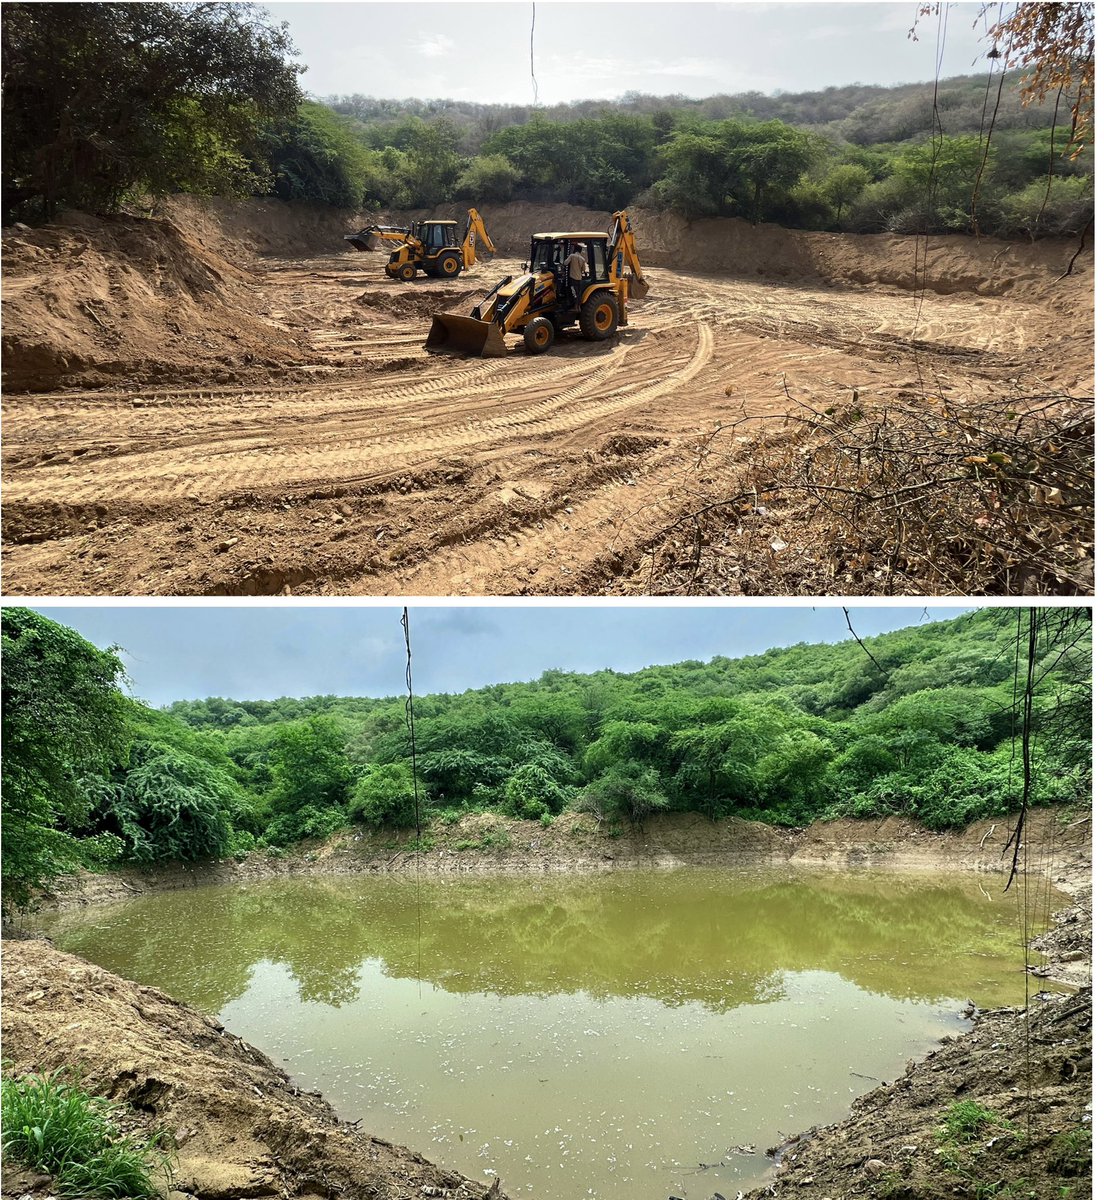 गुरुग्राम से सटे हुए अरावली क्षेत्र में जानवरों के लिए किया गया तालाब अब वर्षा जल से लबालब हो चुका है। विशेष धन्यवाद: BSF 95 बटालियन।
#Pondman #CatchTheRain